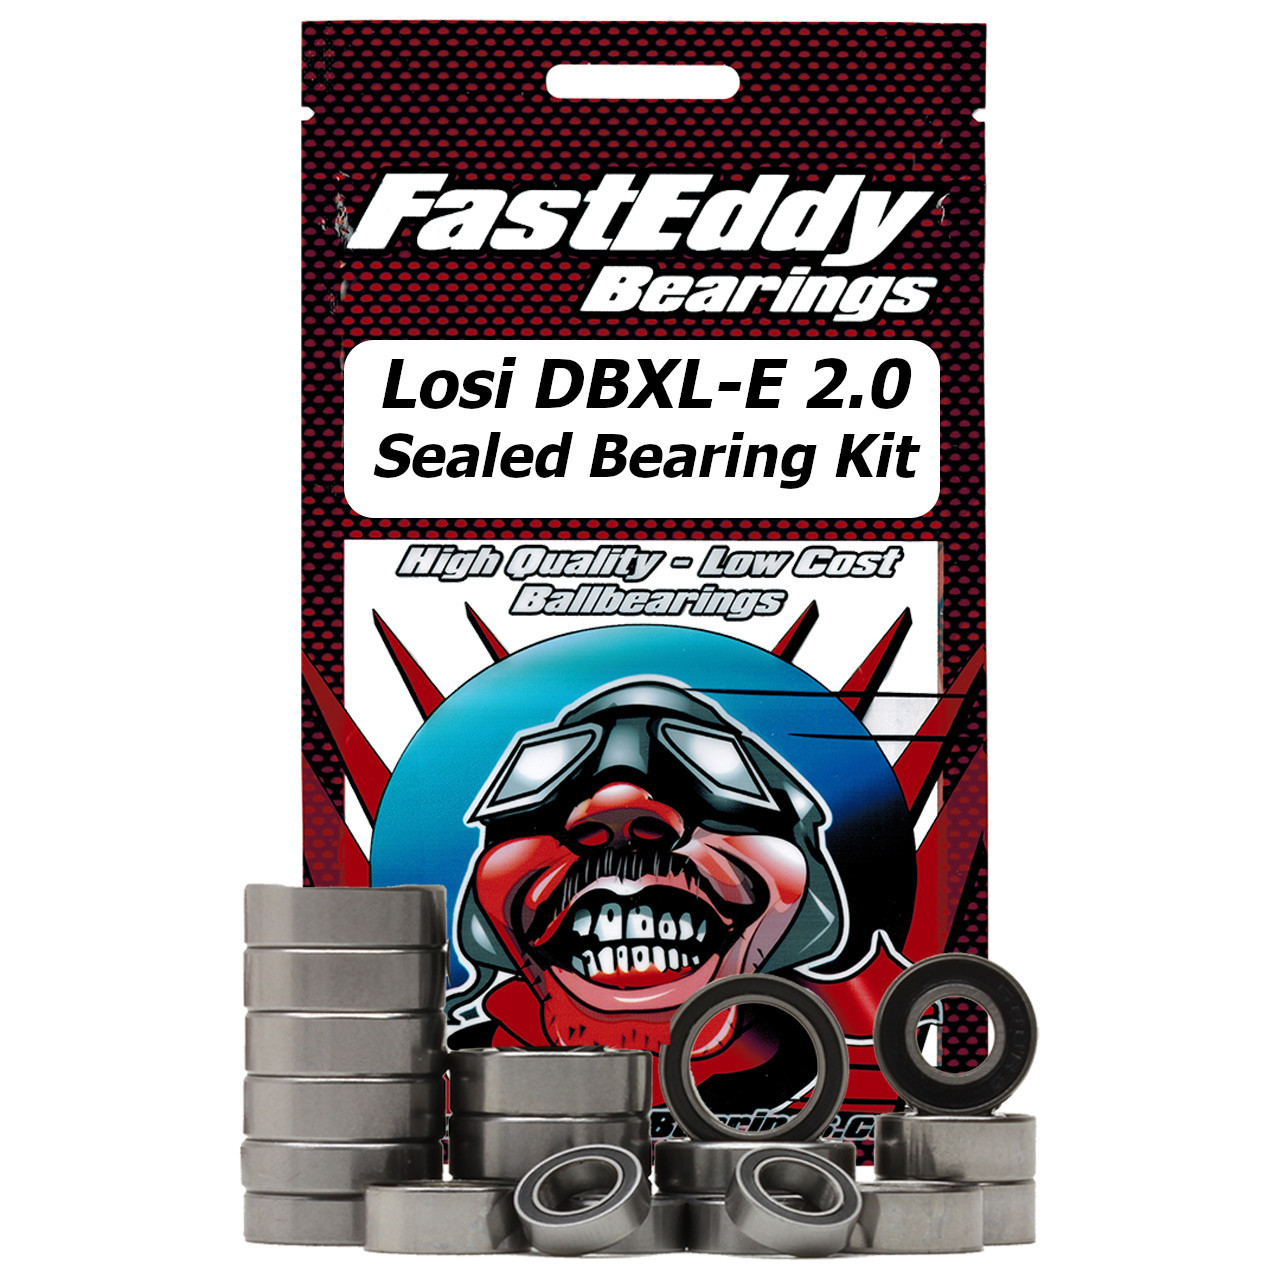 Losi DBXL-E 2.0 Sealed Bearing Kit 